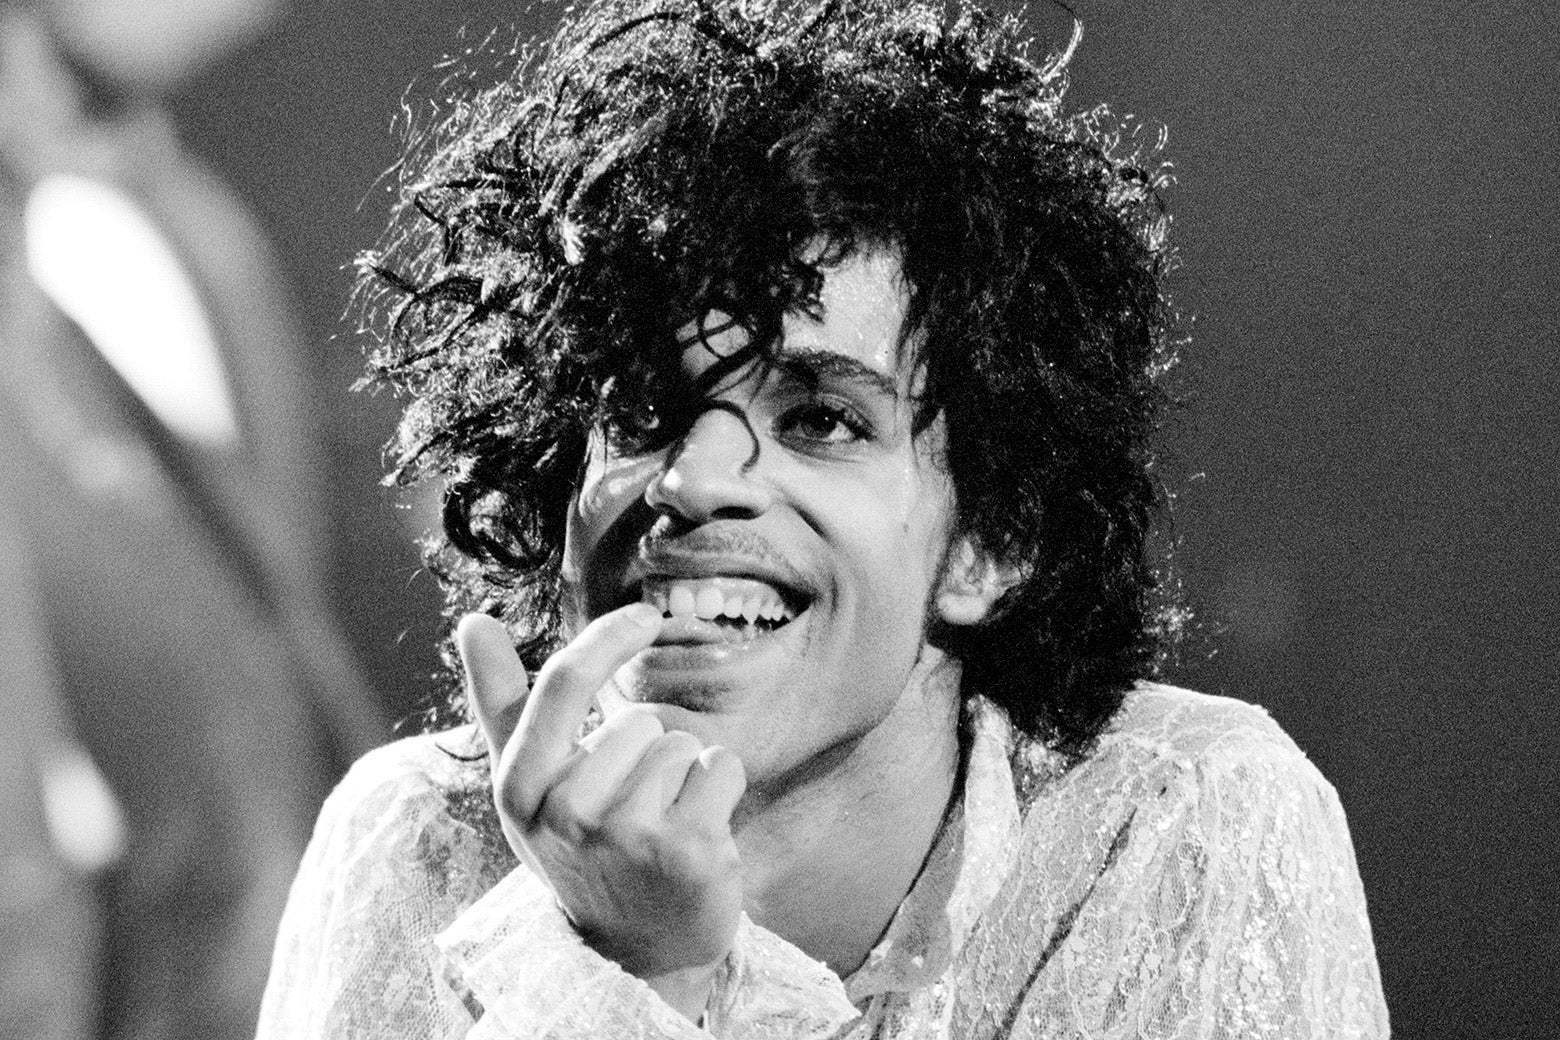 Prince performing onstage.